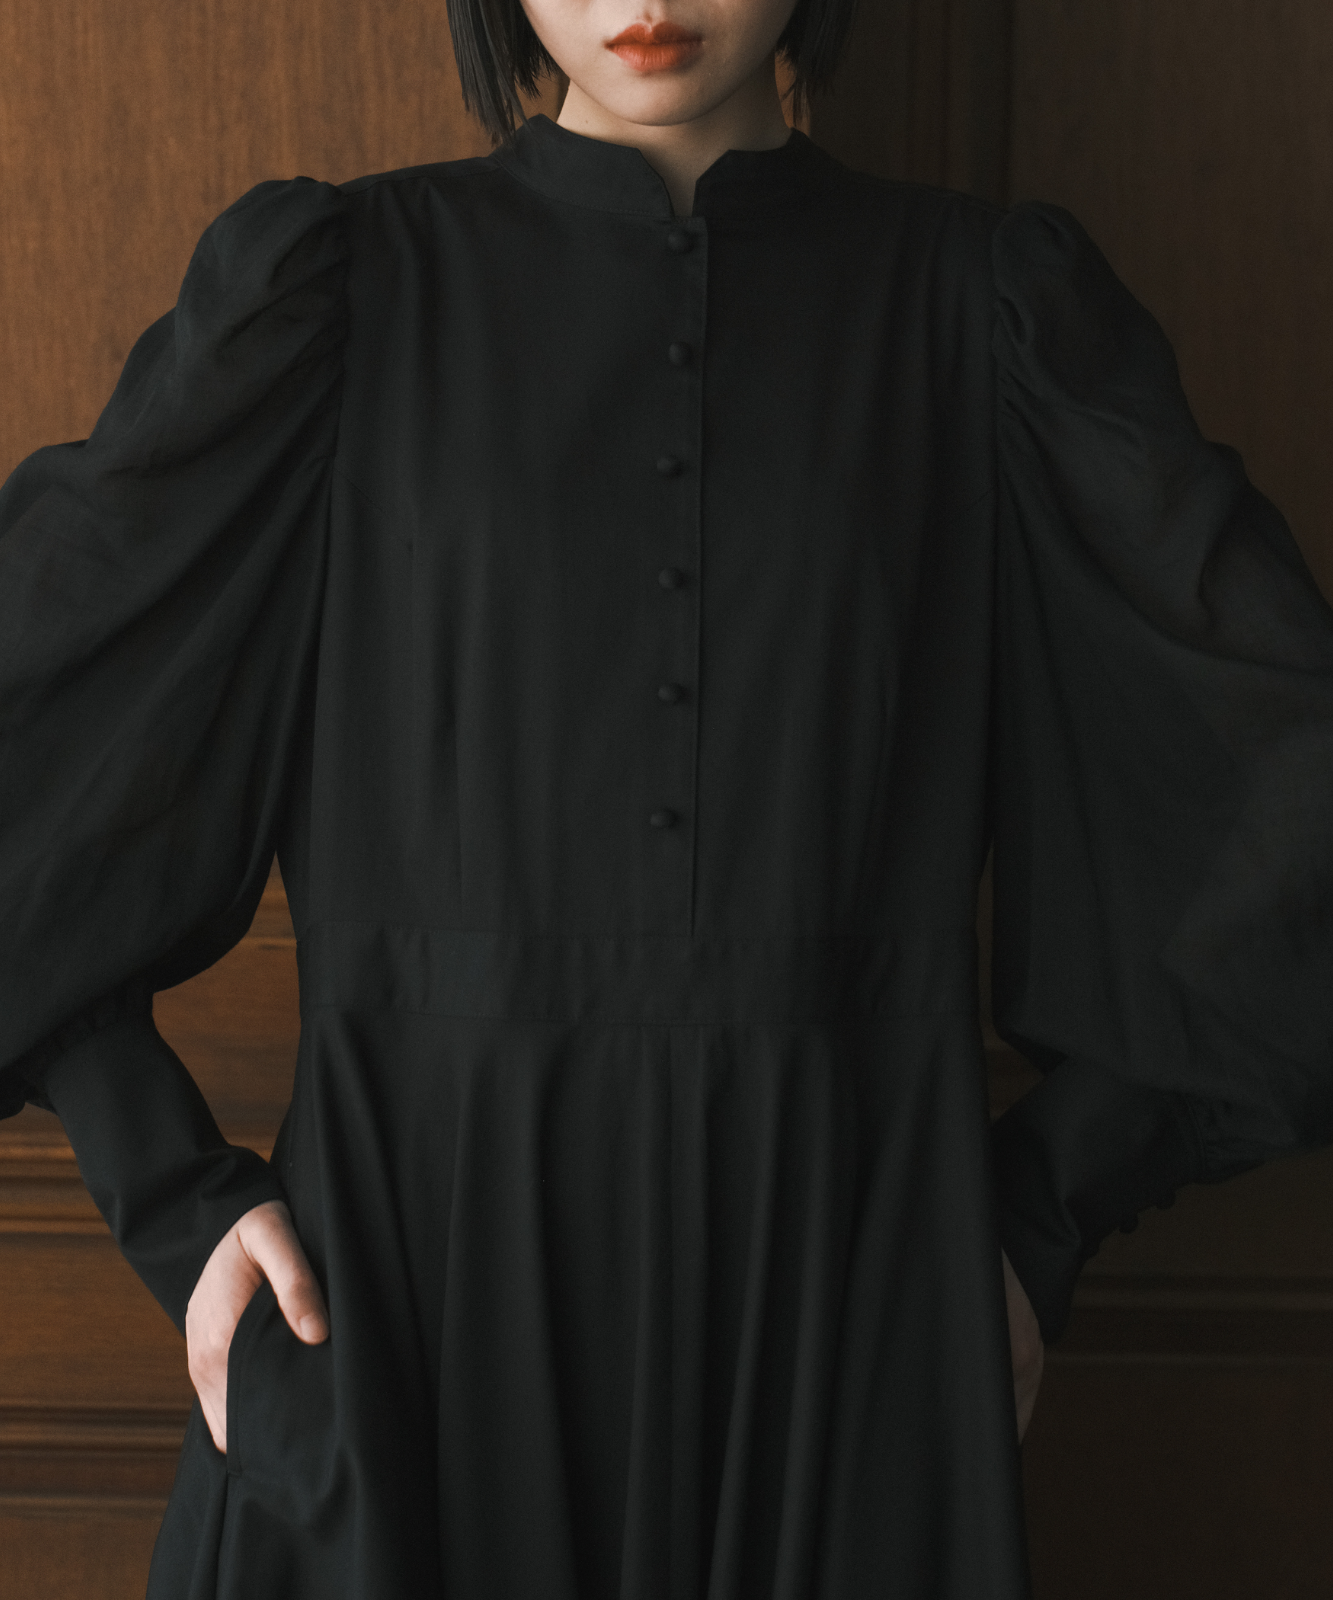 ≪在庫販売≫【THE DRESS #37】black sheer dress（ブラックシアー